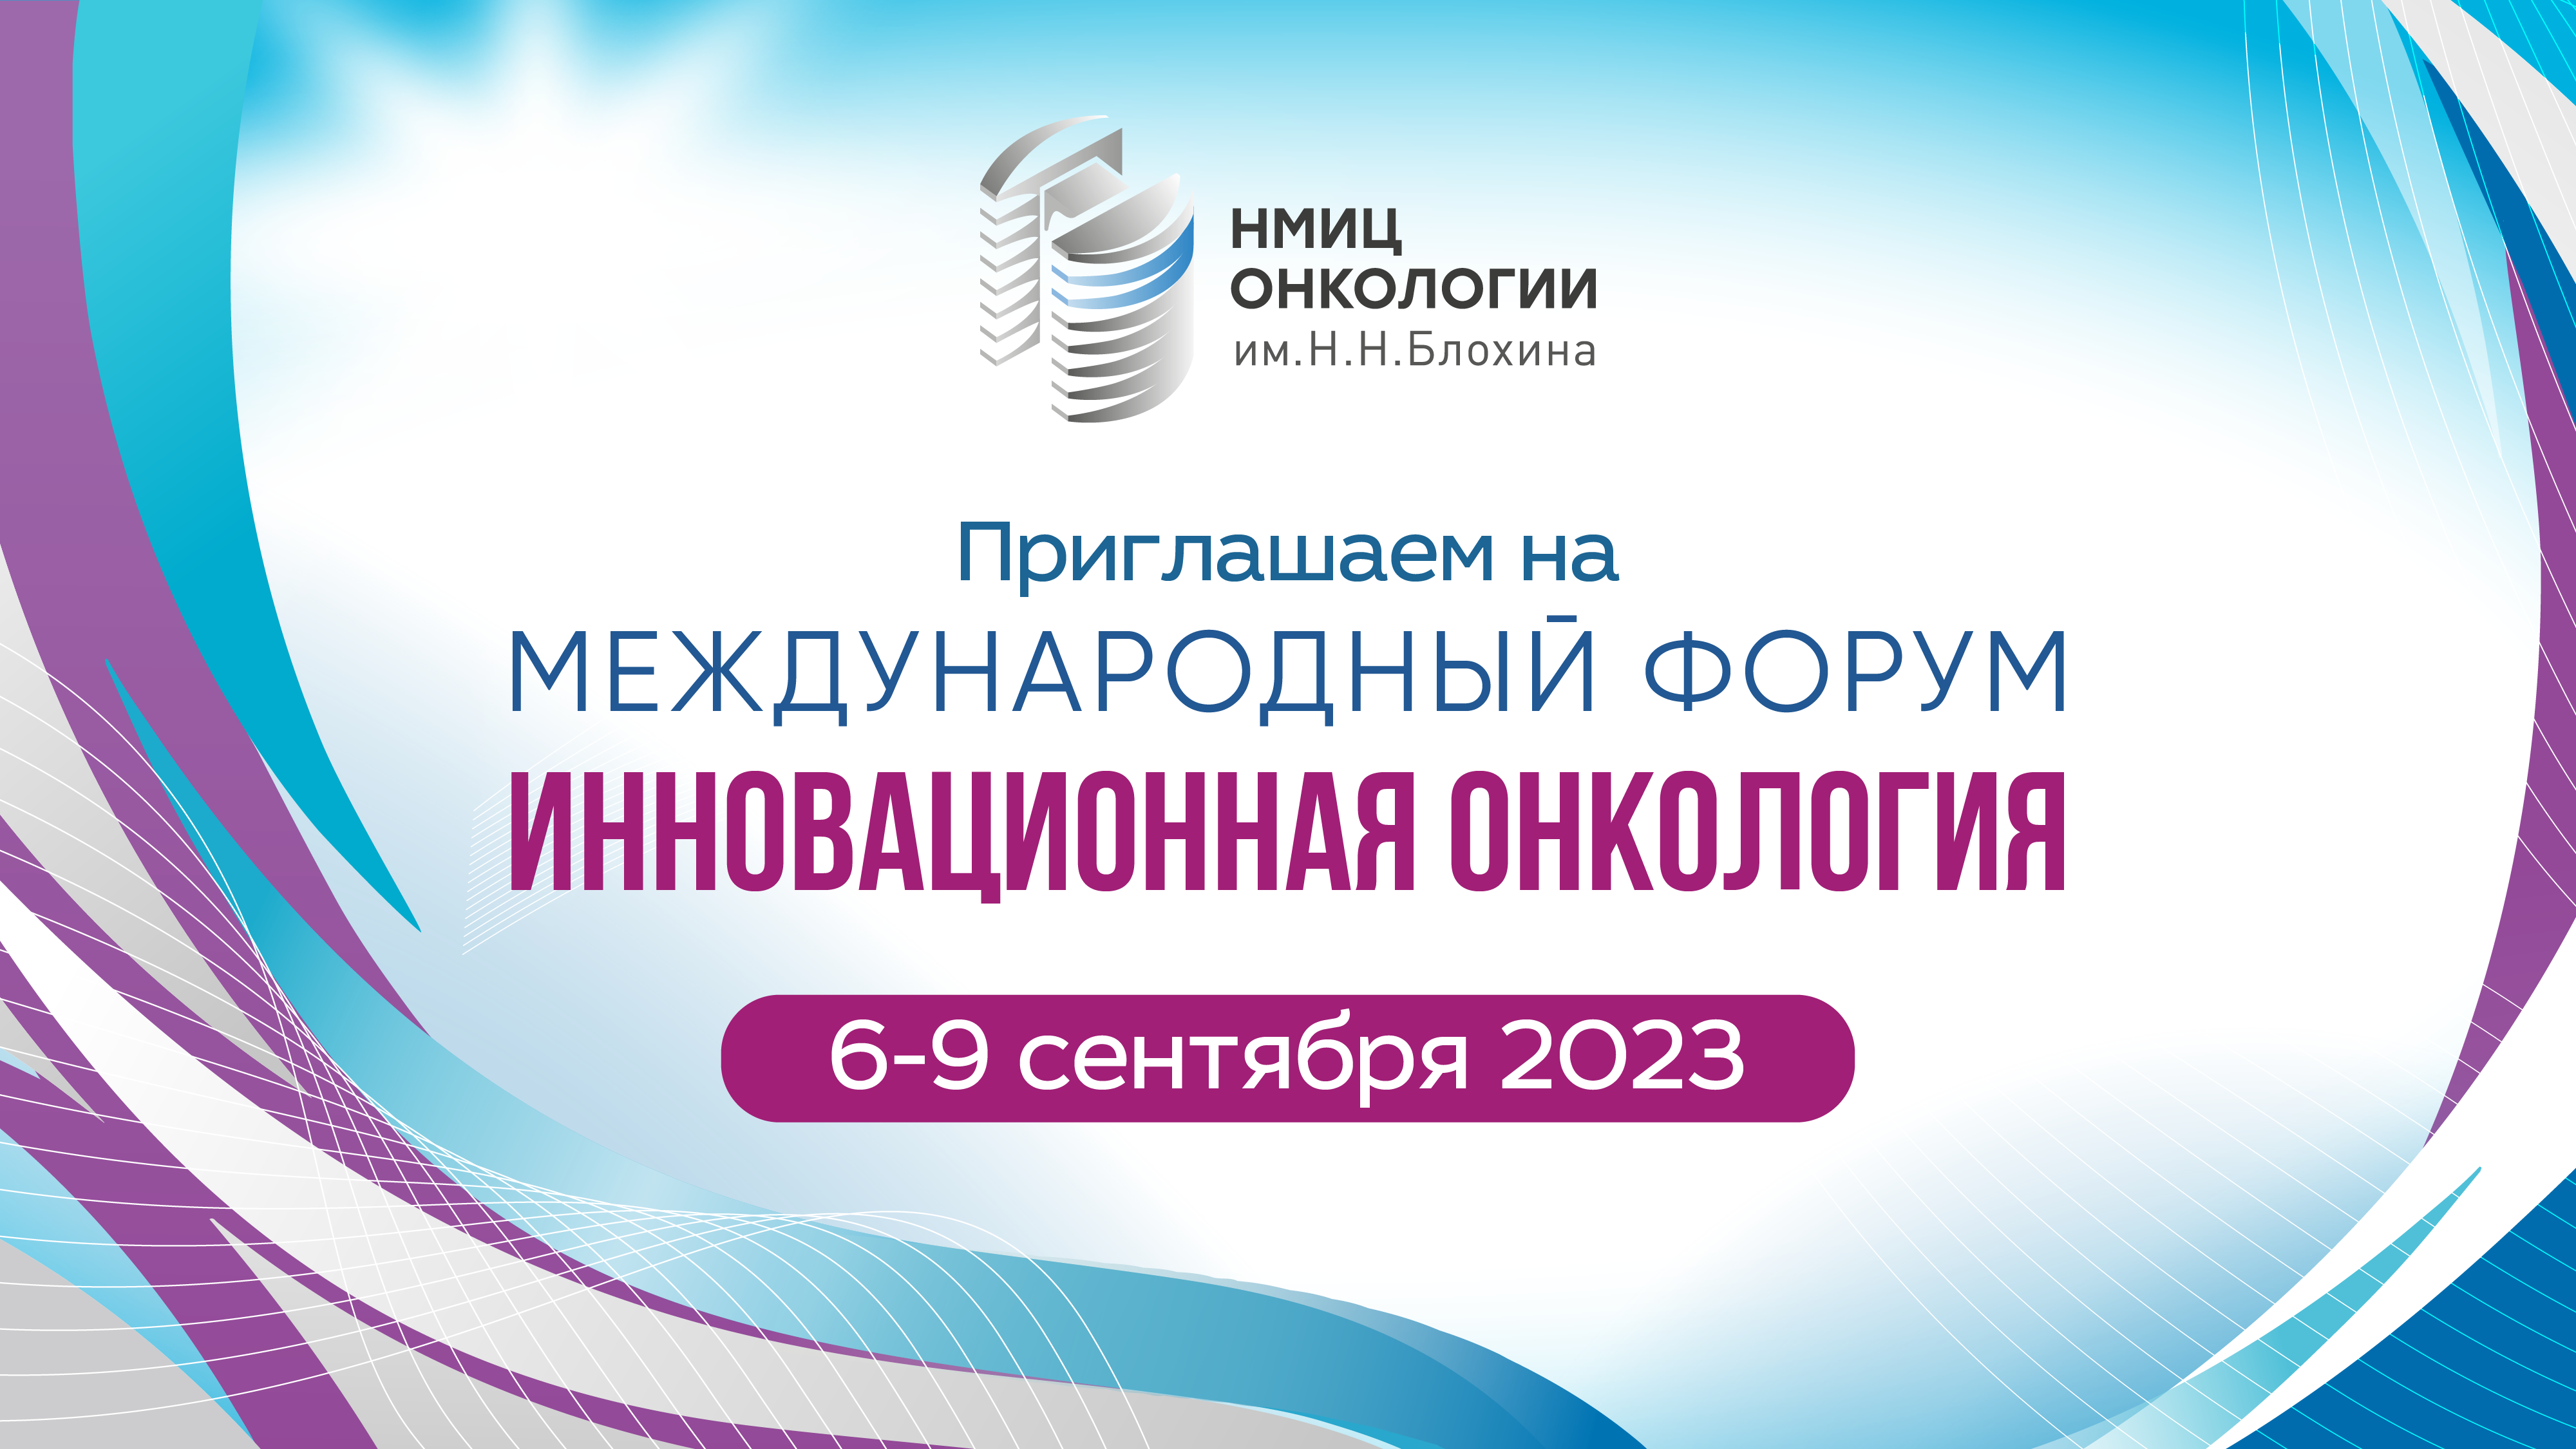 Инновационная онкология. Инновационная онкология 2022. Онкология в 2023 году. Международный форум инновационная онкология презентация. 4 форум онкологии